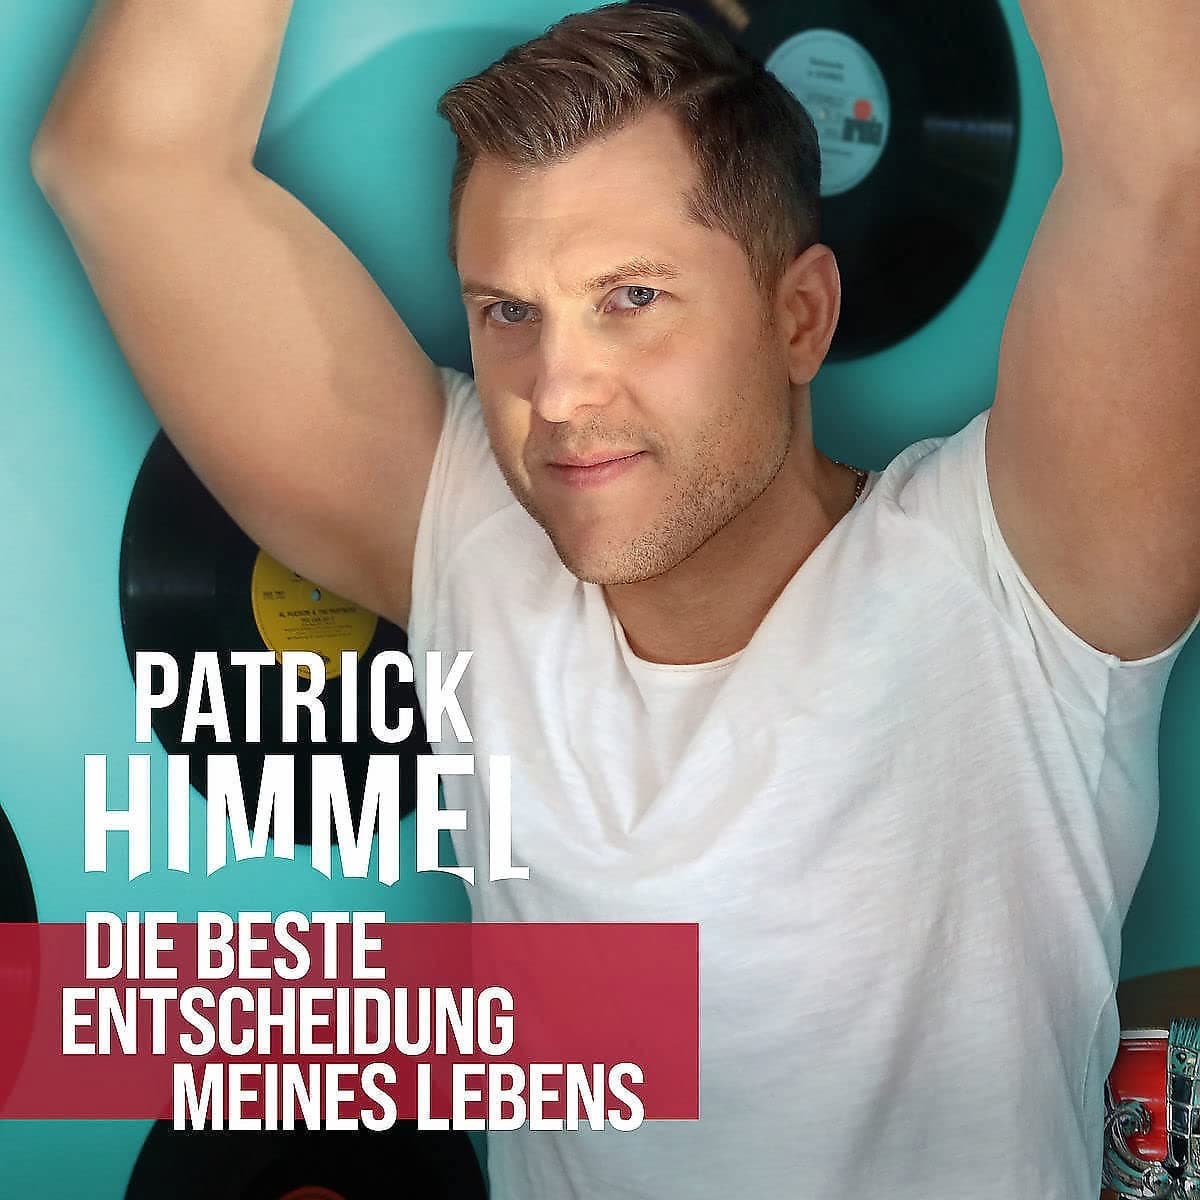 Patrick Himmel CD “Die beste Entscheidung meines Lebens” 2022